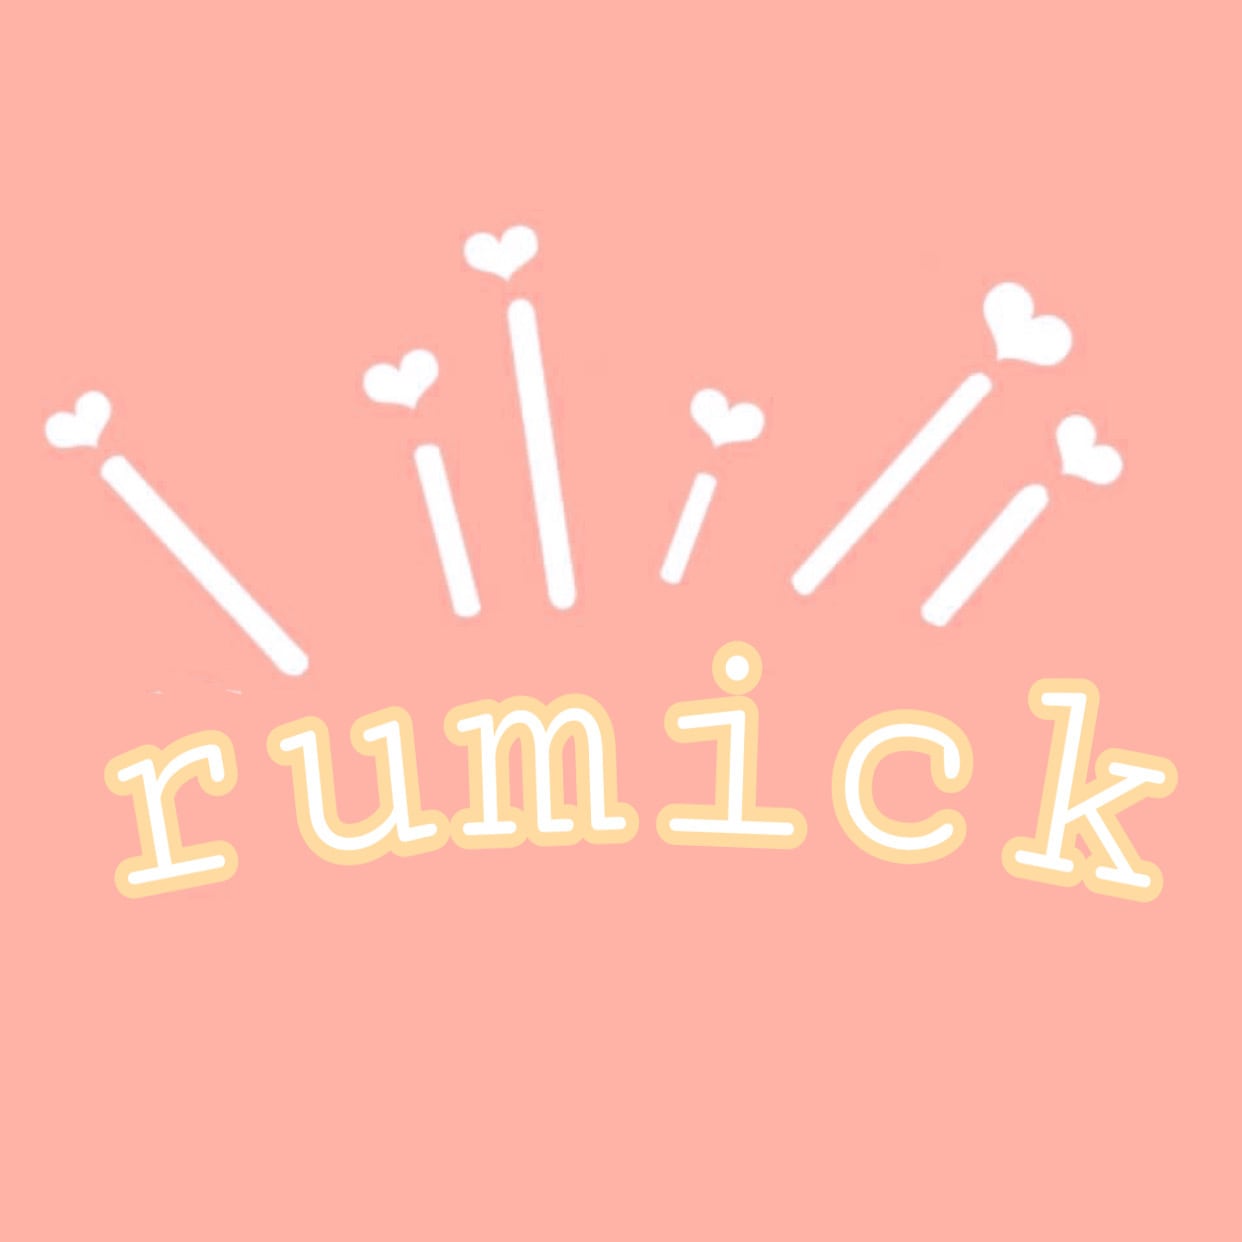 rumick